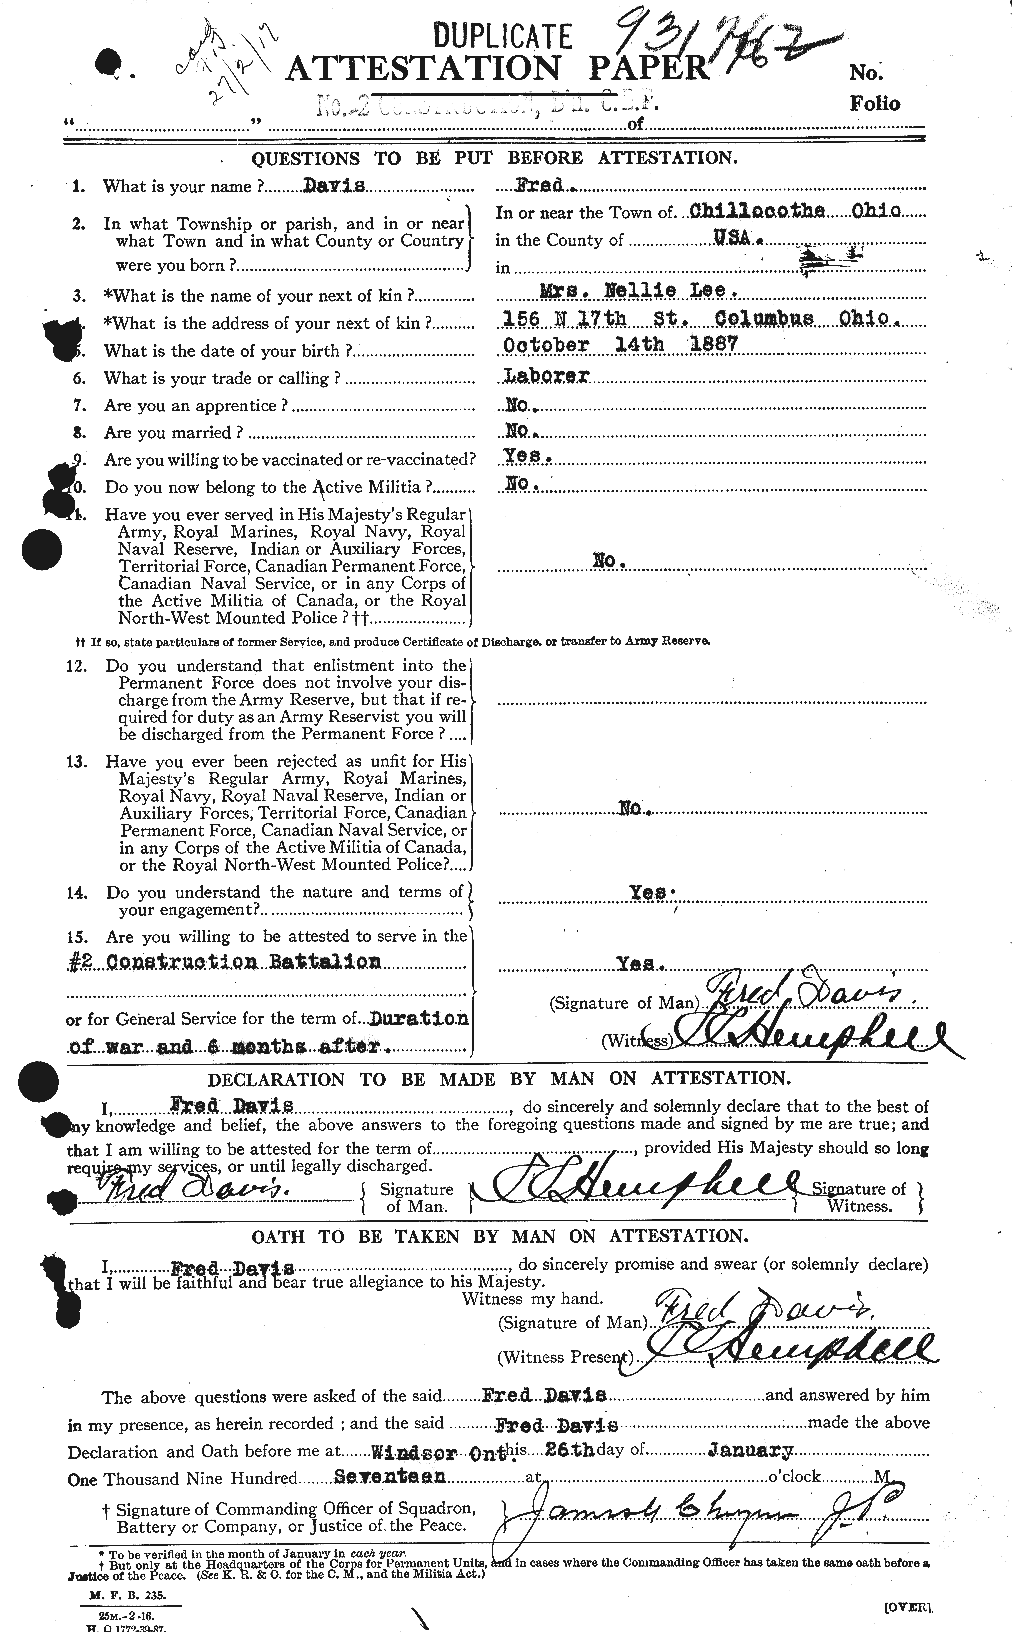 Dossiers du Personnel de la Première Guerre mondiale - CEC 281921a